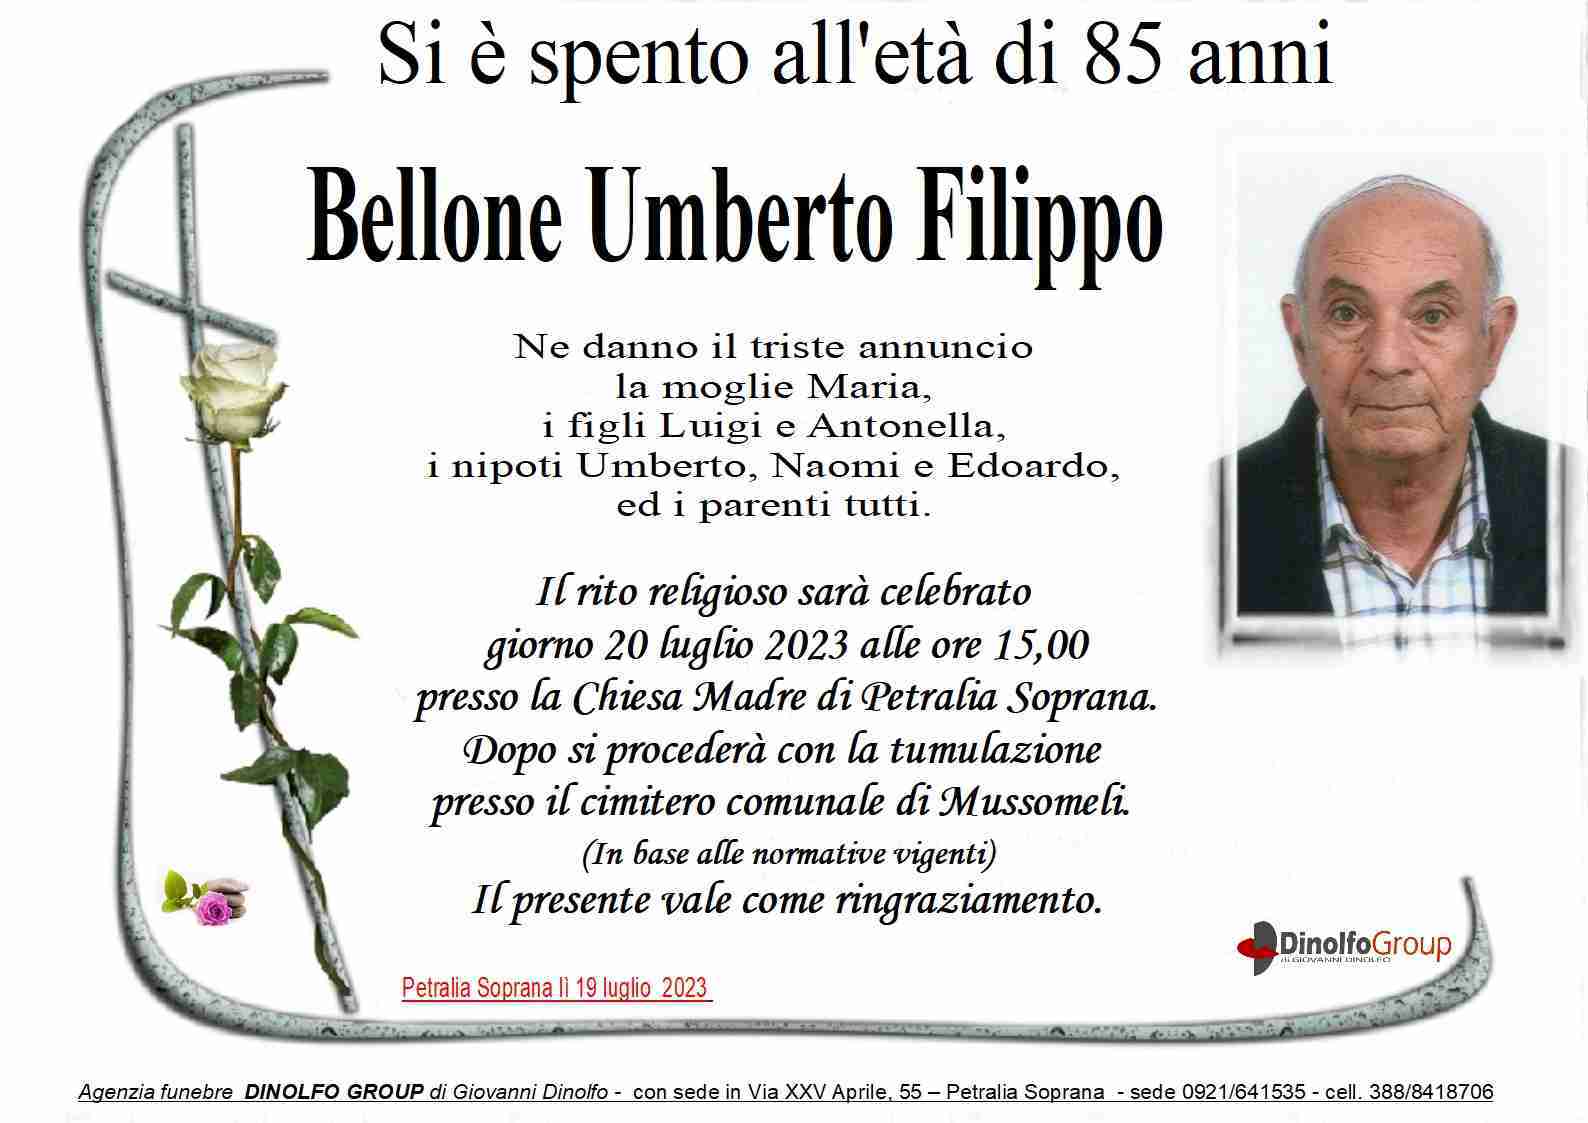 Umberto Filippo Bellone